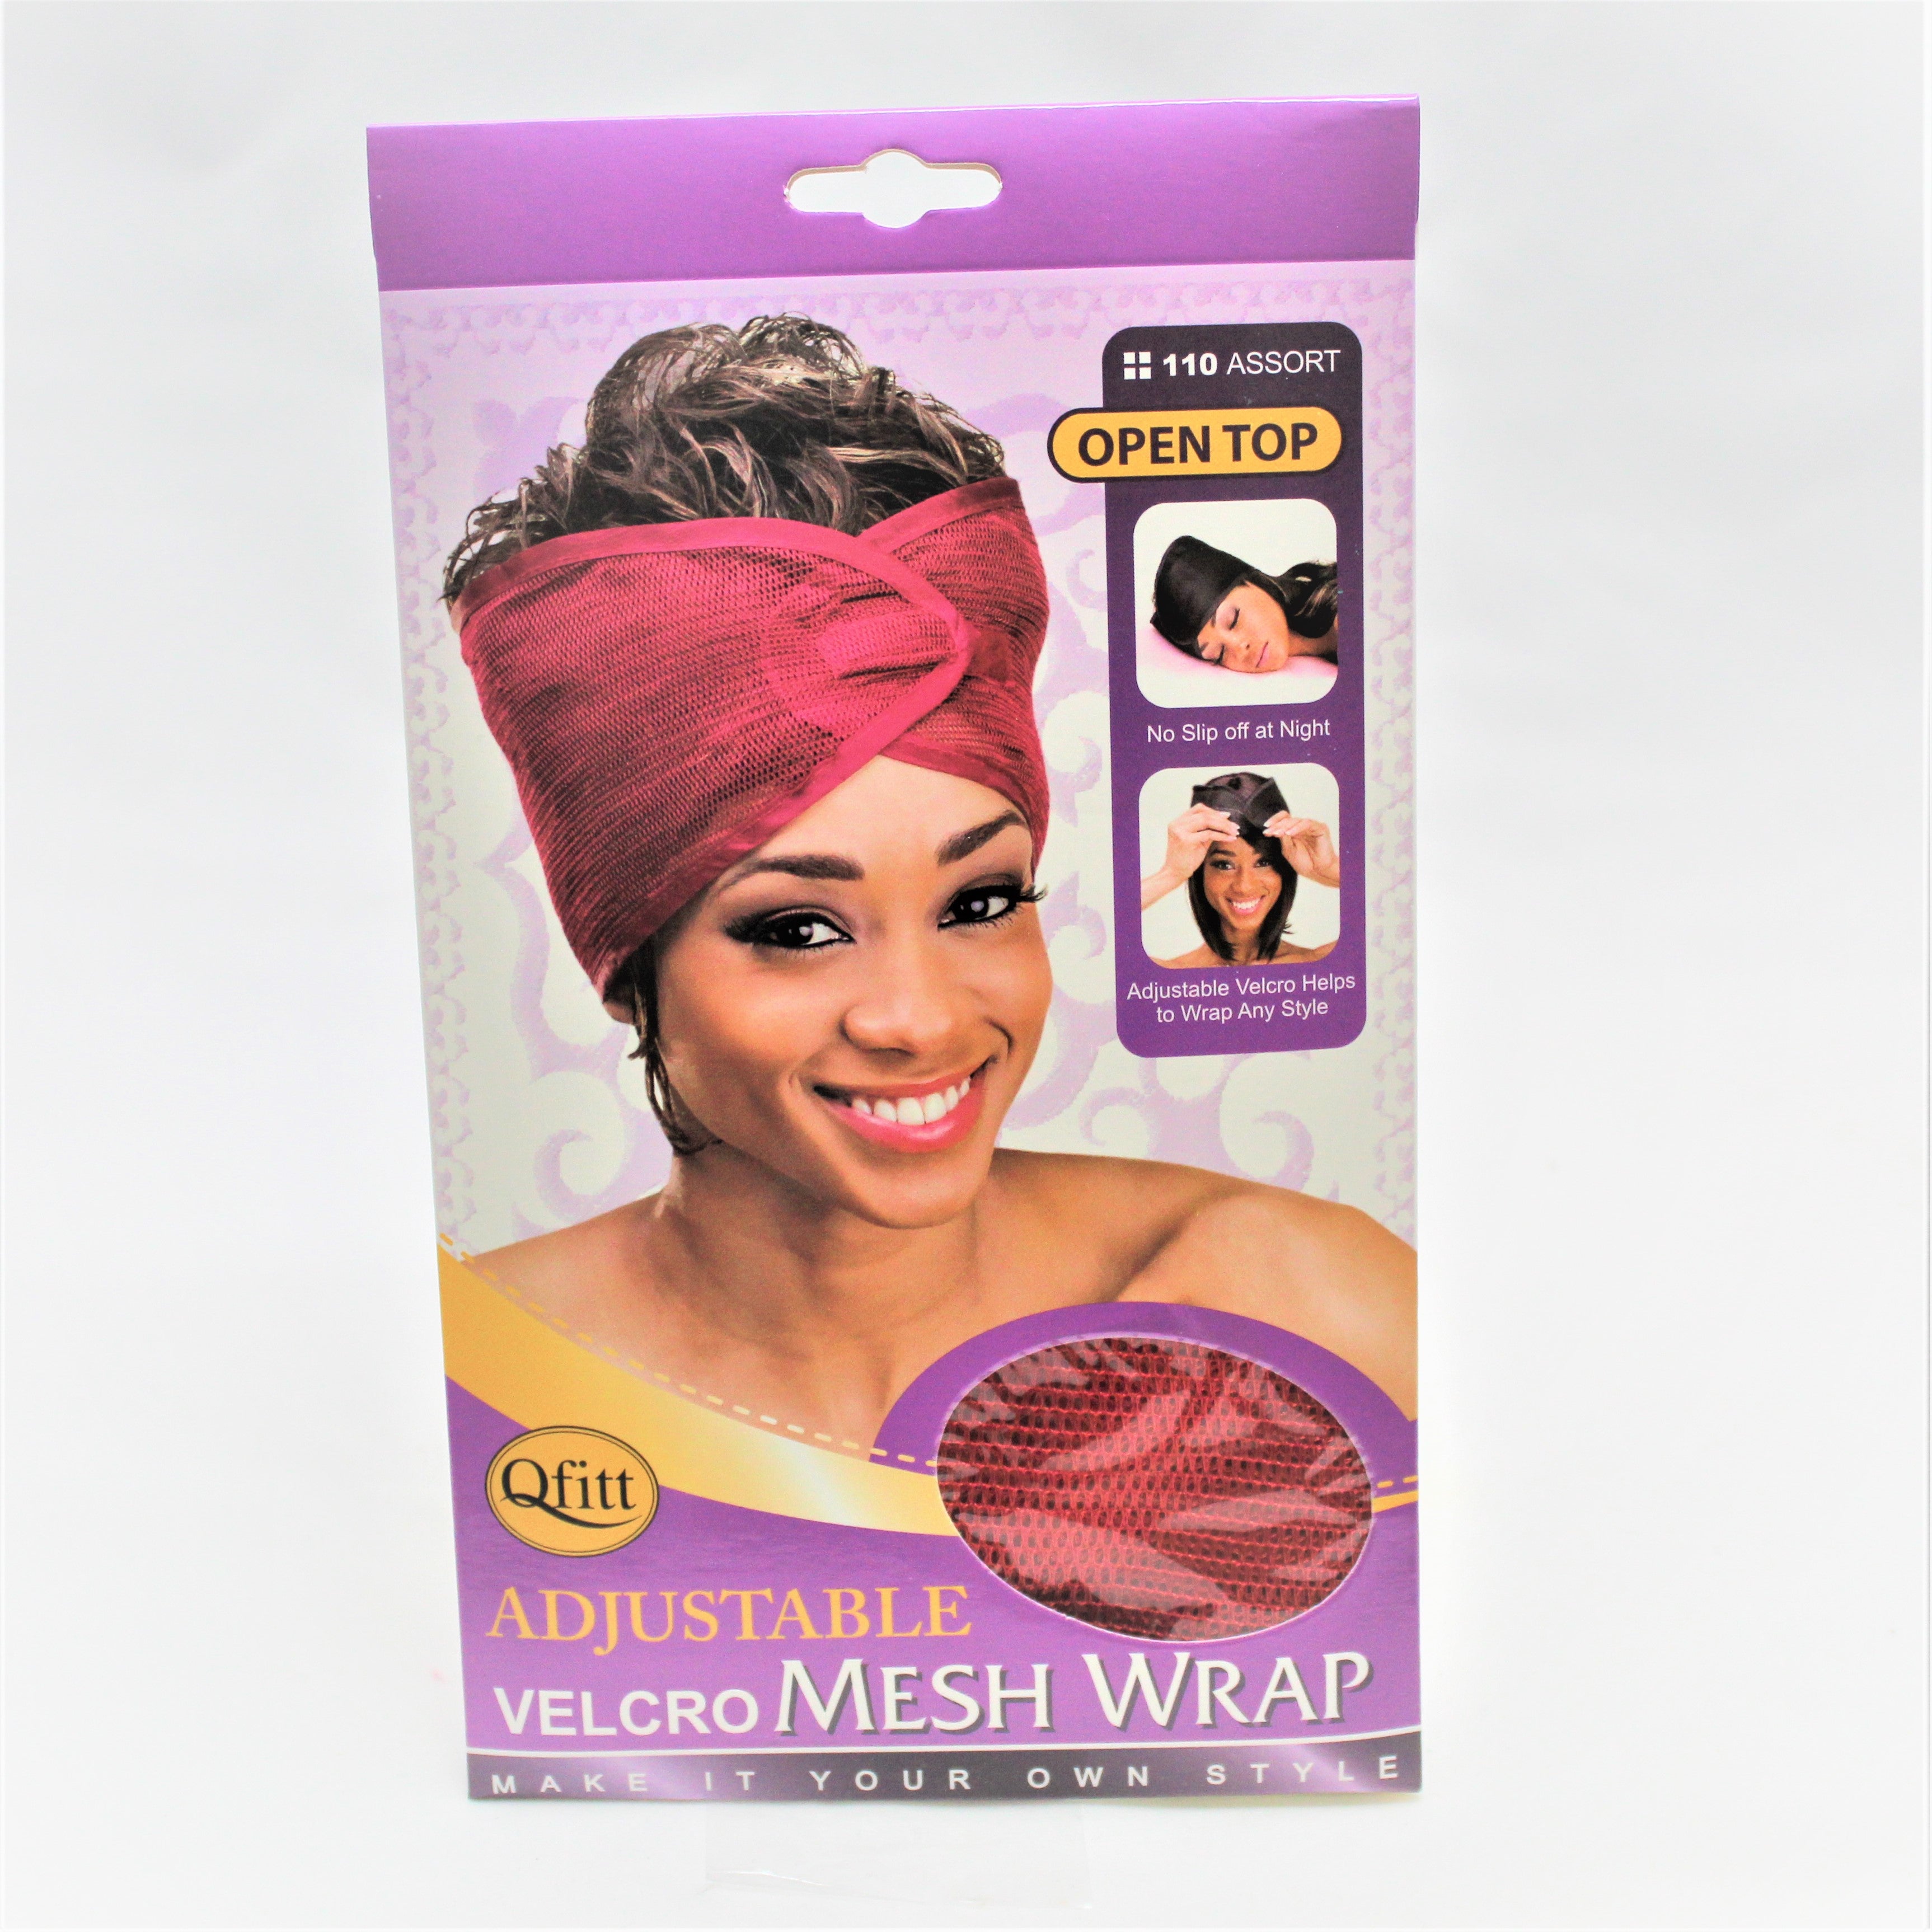 Qfitt Adjustable Velcro Mesh Wrap #110 Assort - Beauty Bar & Supply